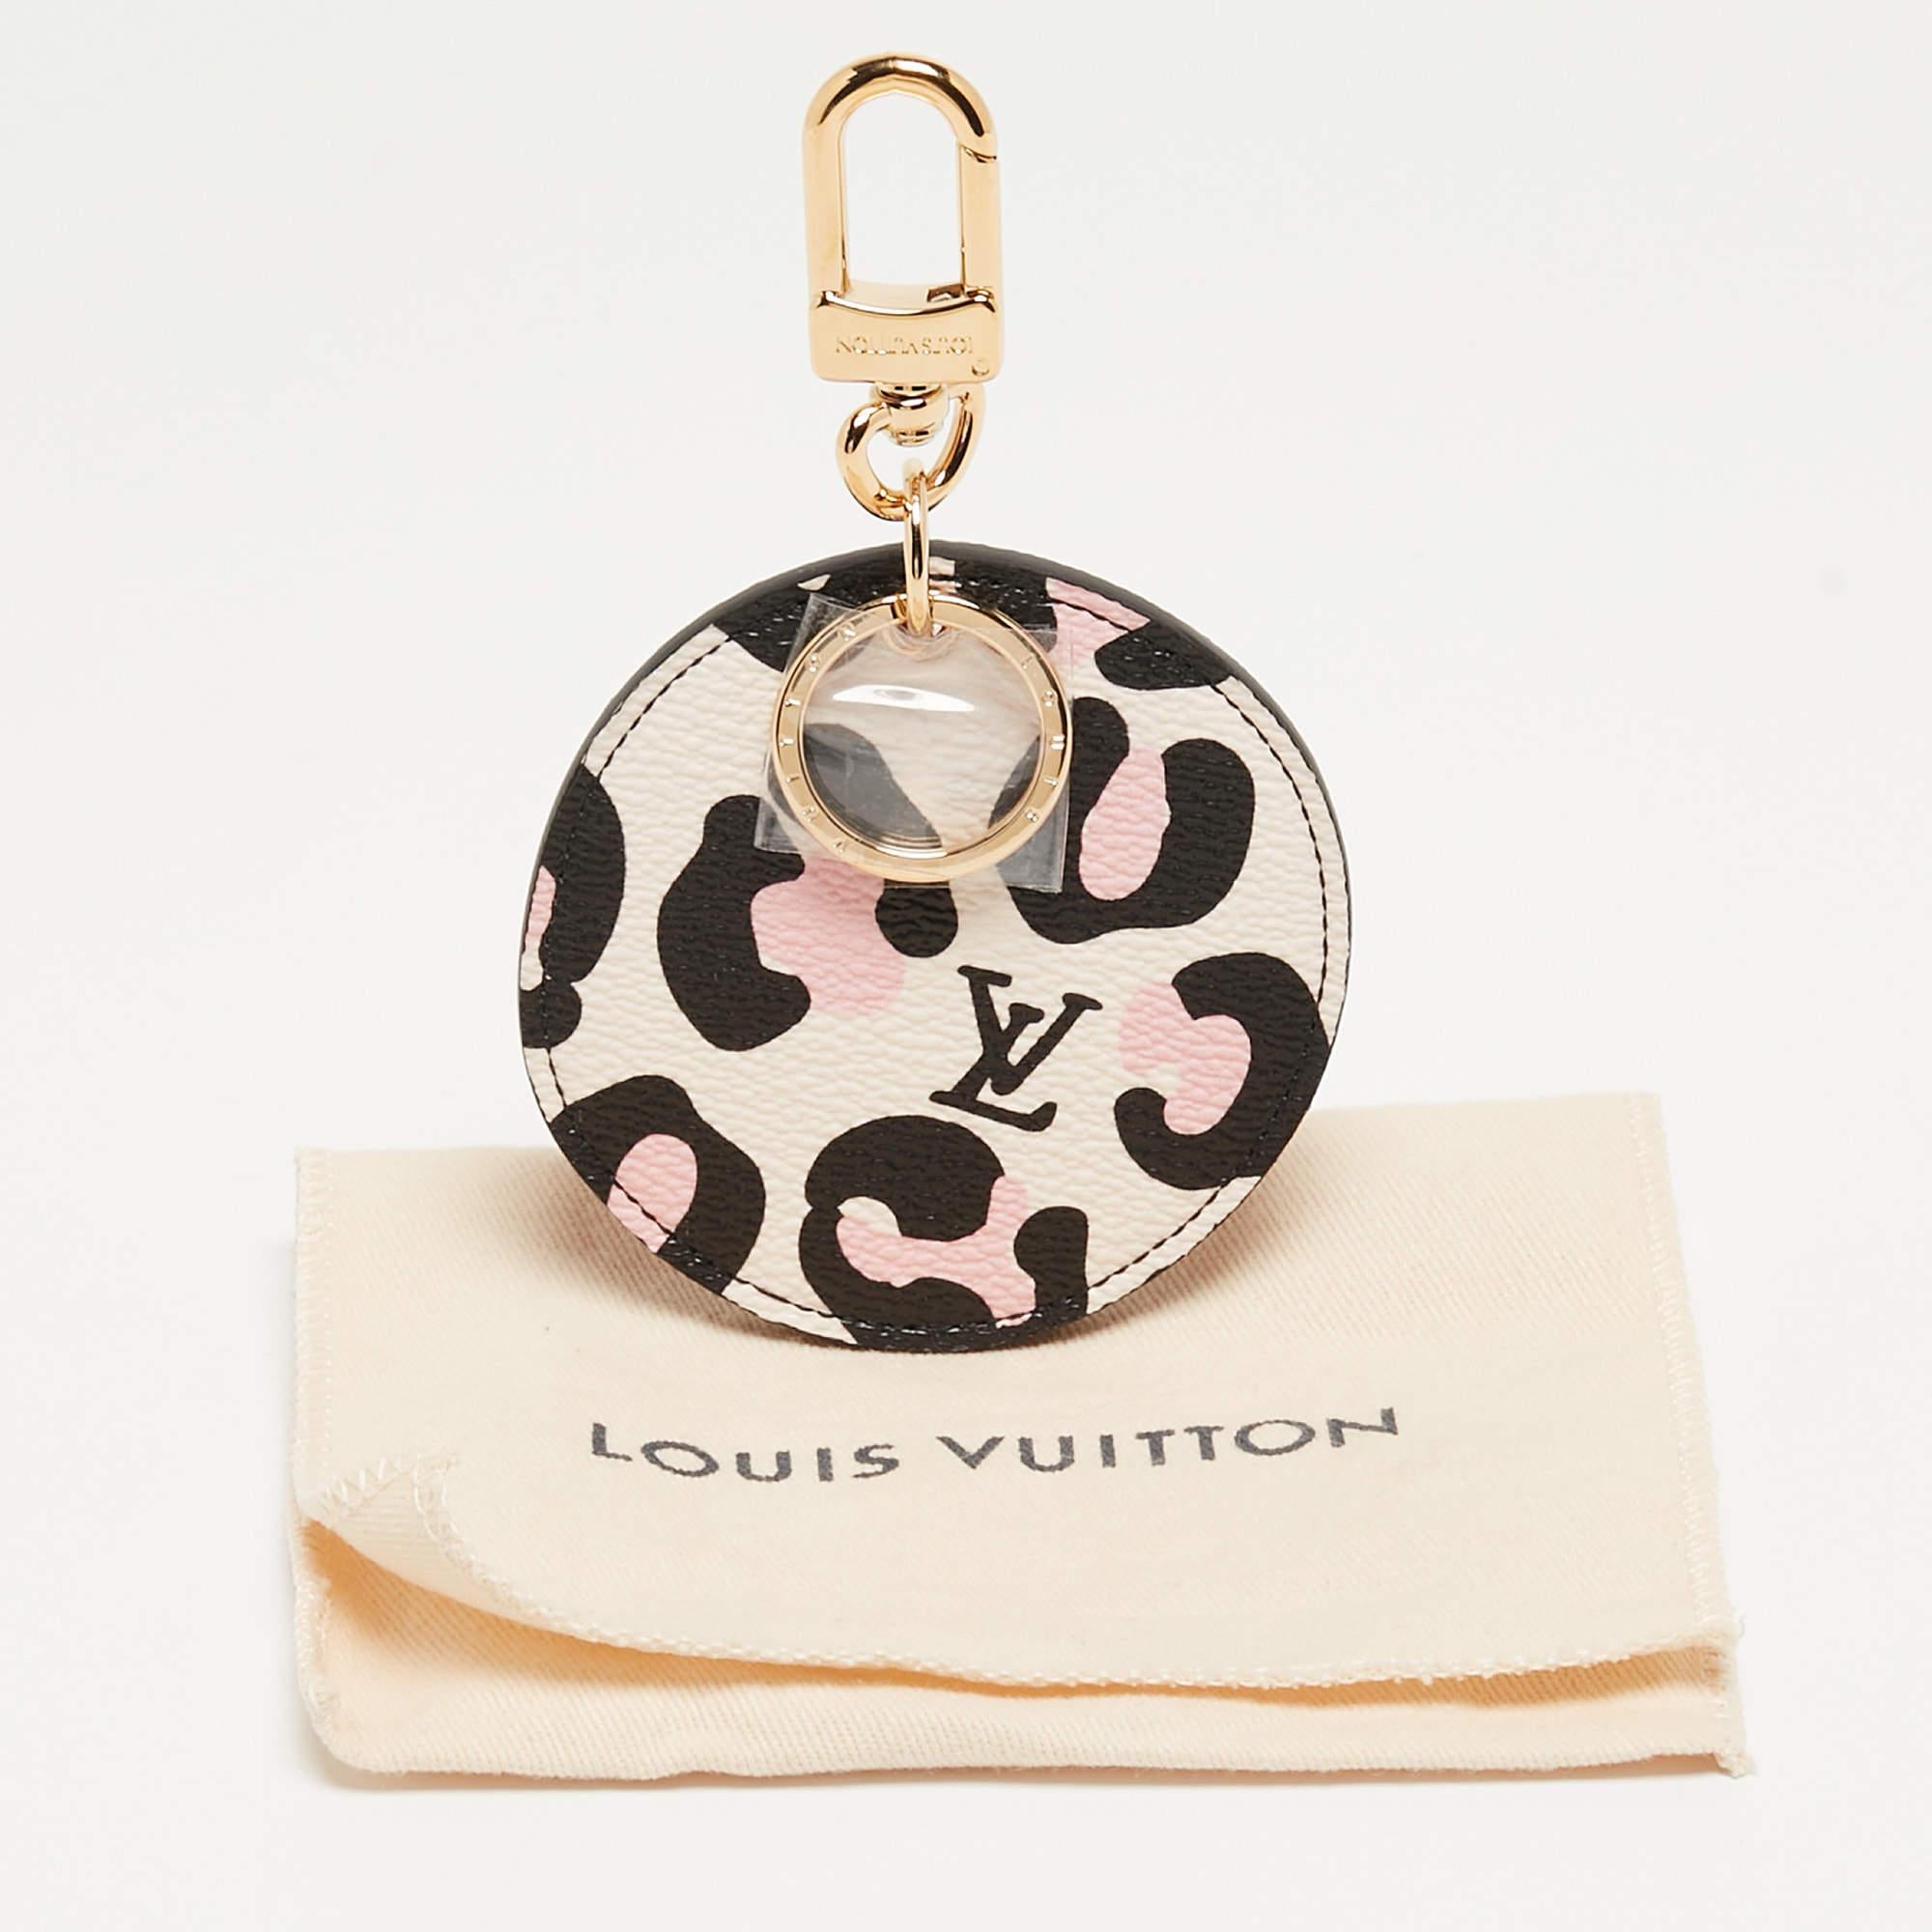 Louis Vuitton Monogram Canvas Wild At Heart Illustre Bag Charm 2